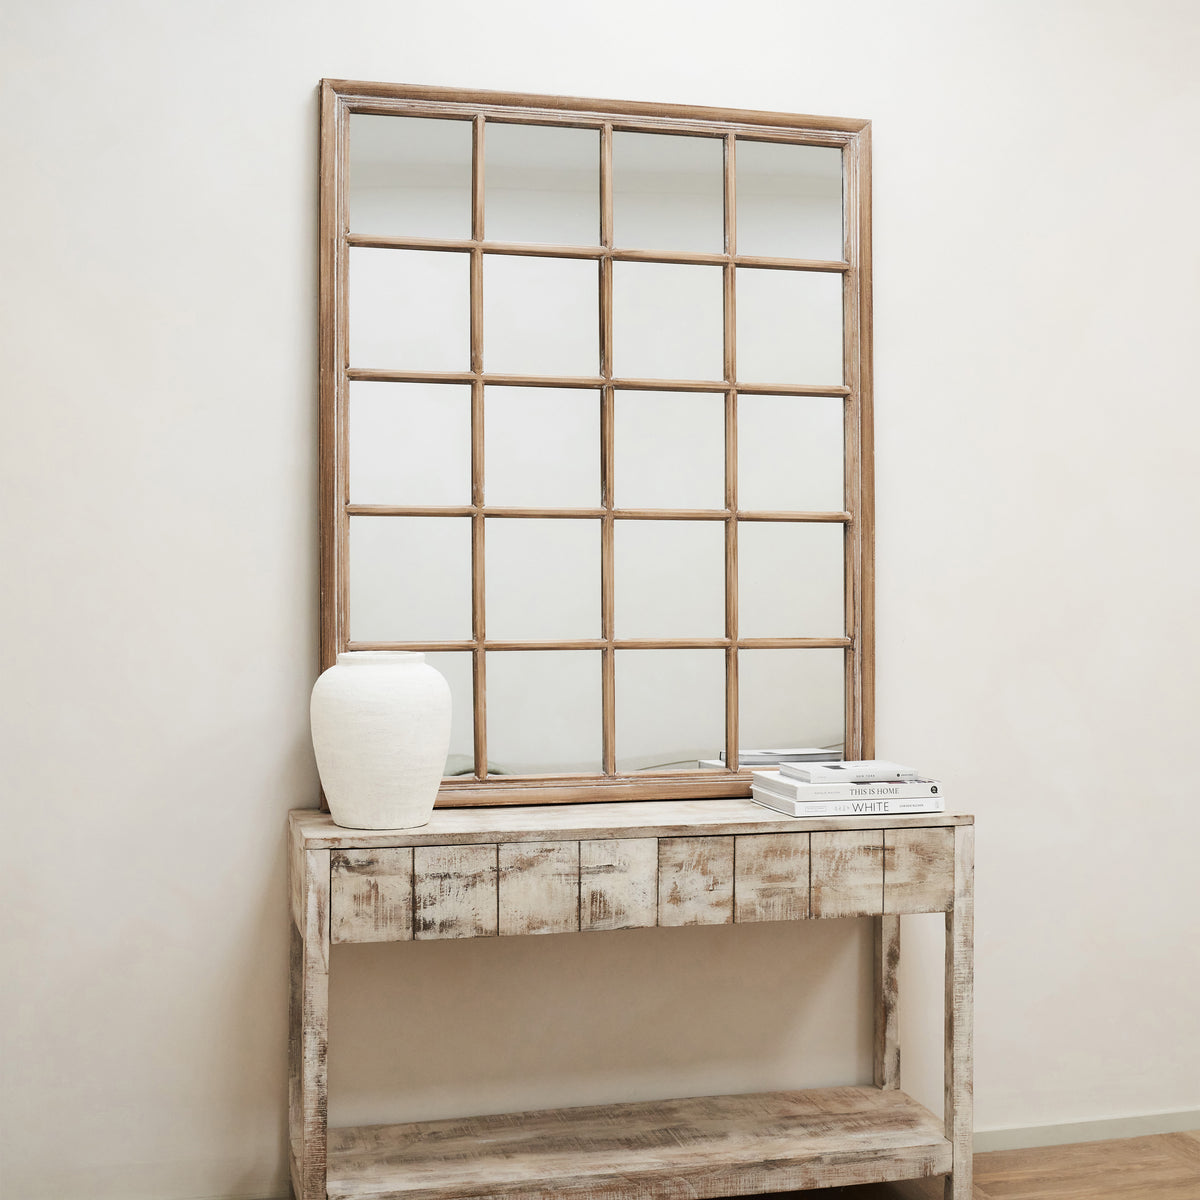 Sasha - Miroir de fenêtre rectangulaire Shabby Chic en chêne 133 cm x 108 cm